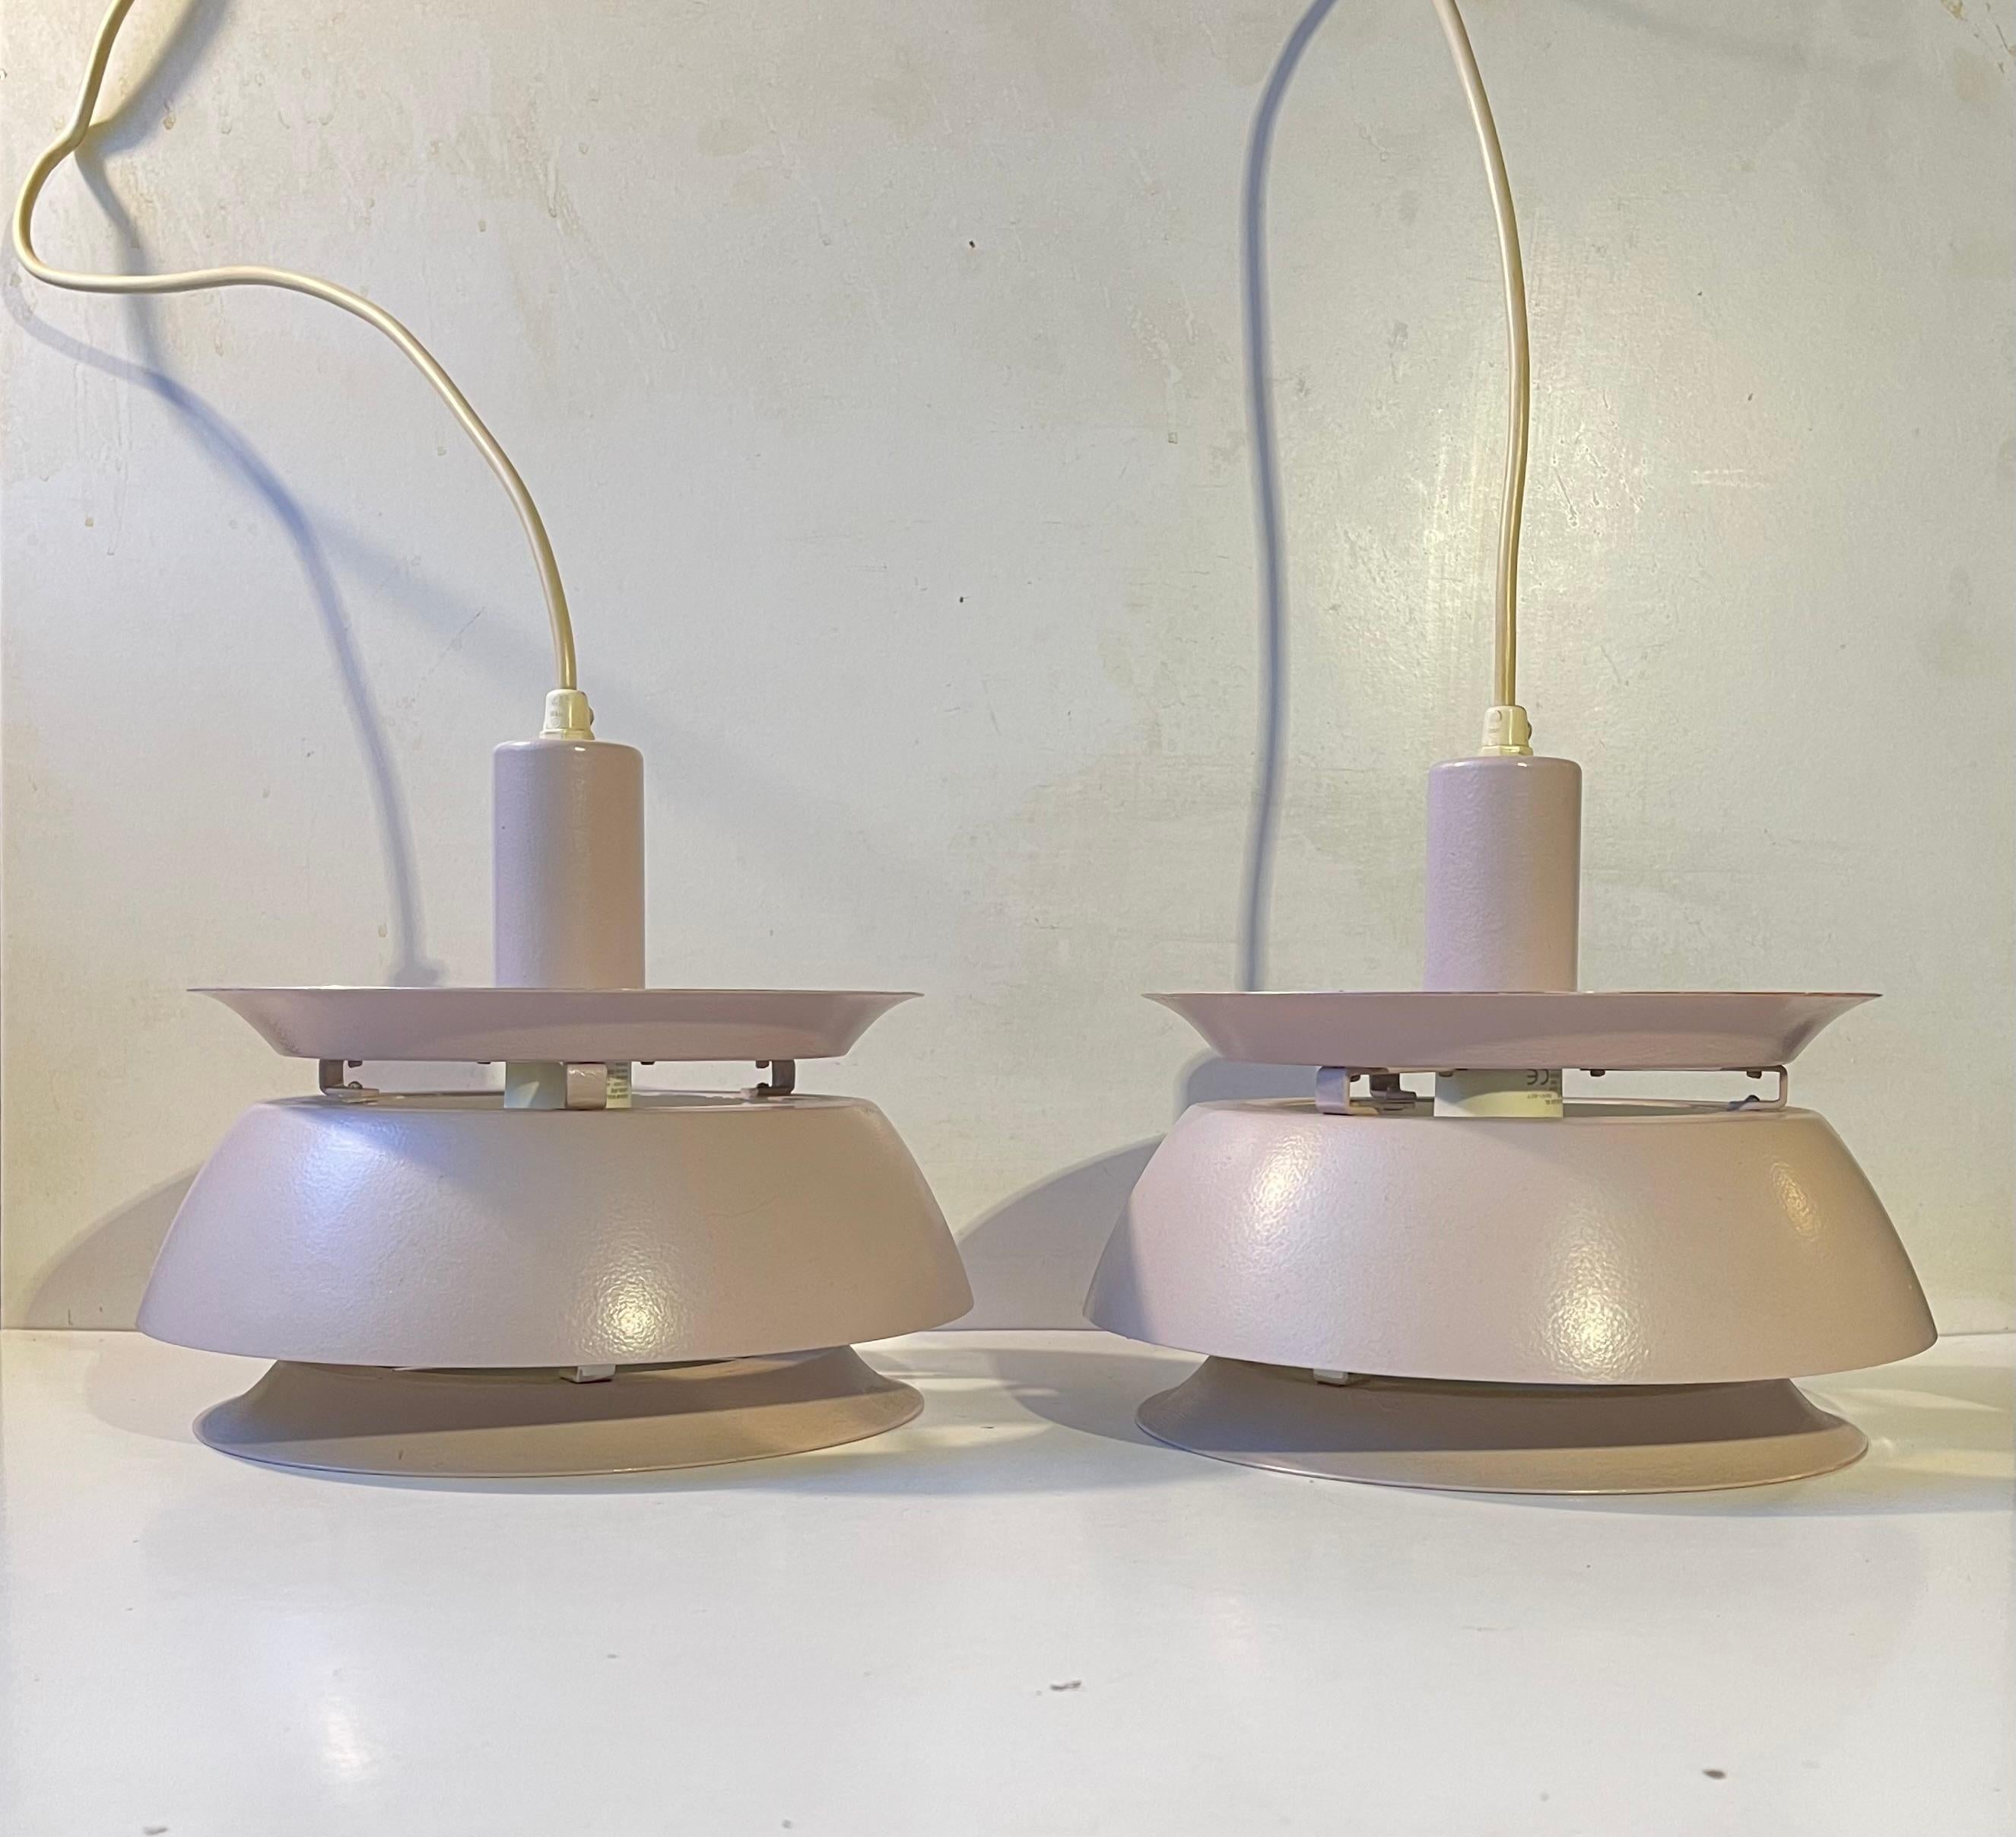 Paire de lampes suspendues en aluminium à plusieurs niveaux, fabriquées par Vitrika au Danemark. Conçue et fabriquée au début des années 1970 dans un style rappelant Carl Thore et Jørn Utzon. Les Whiting présentent des teintes intérieures blanches